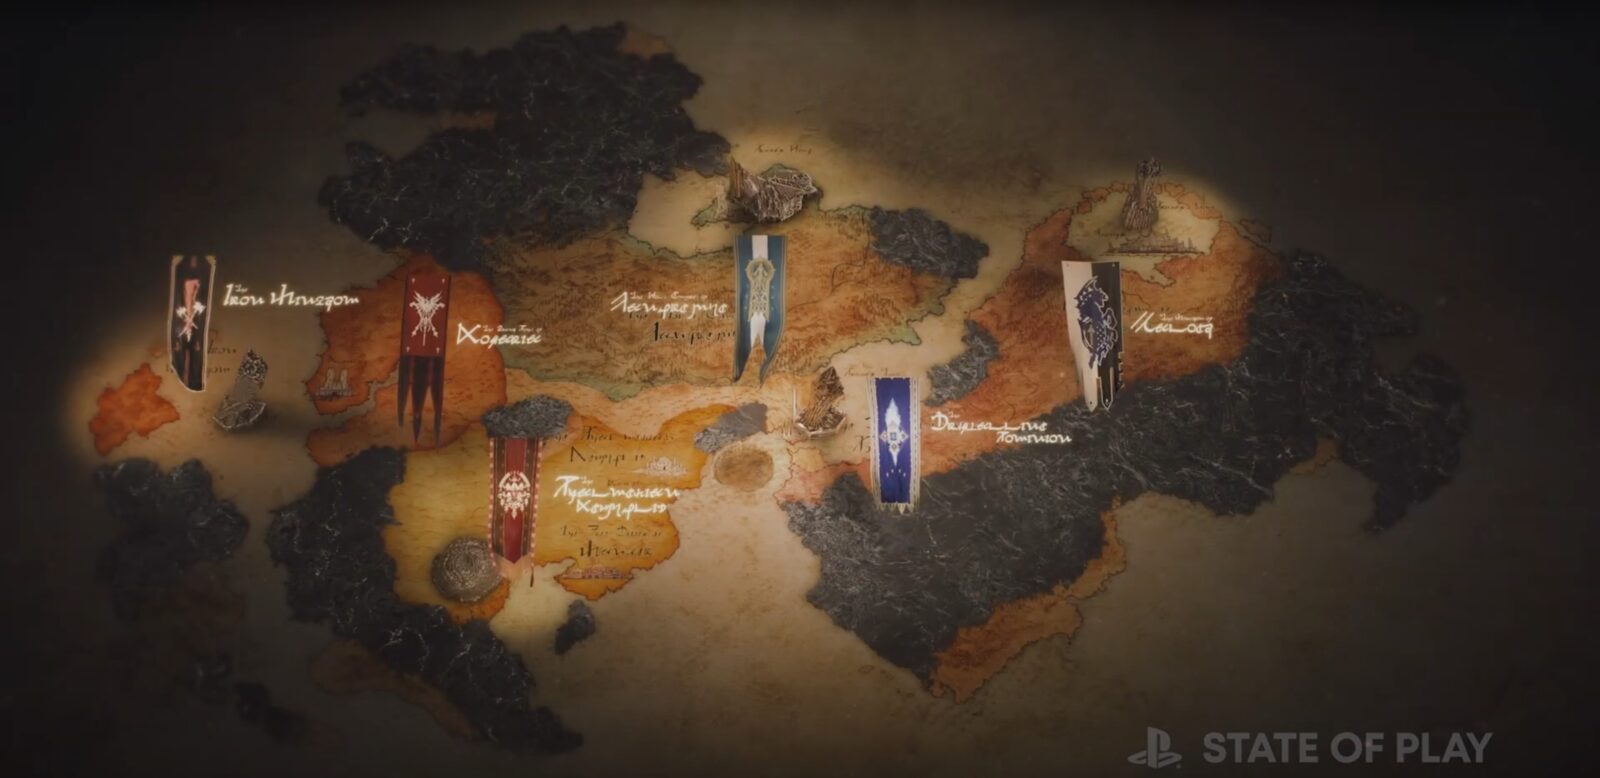 Final Fantasy XVI : Le résumé des informations du State Of Play